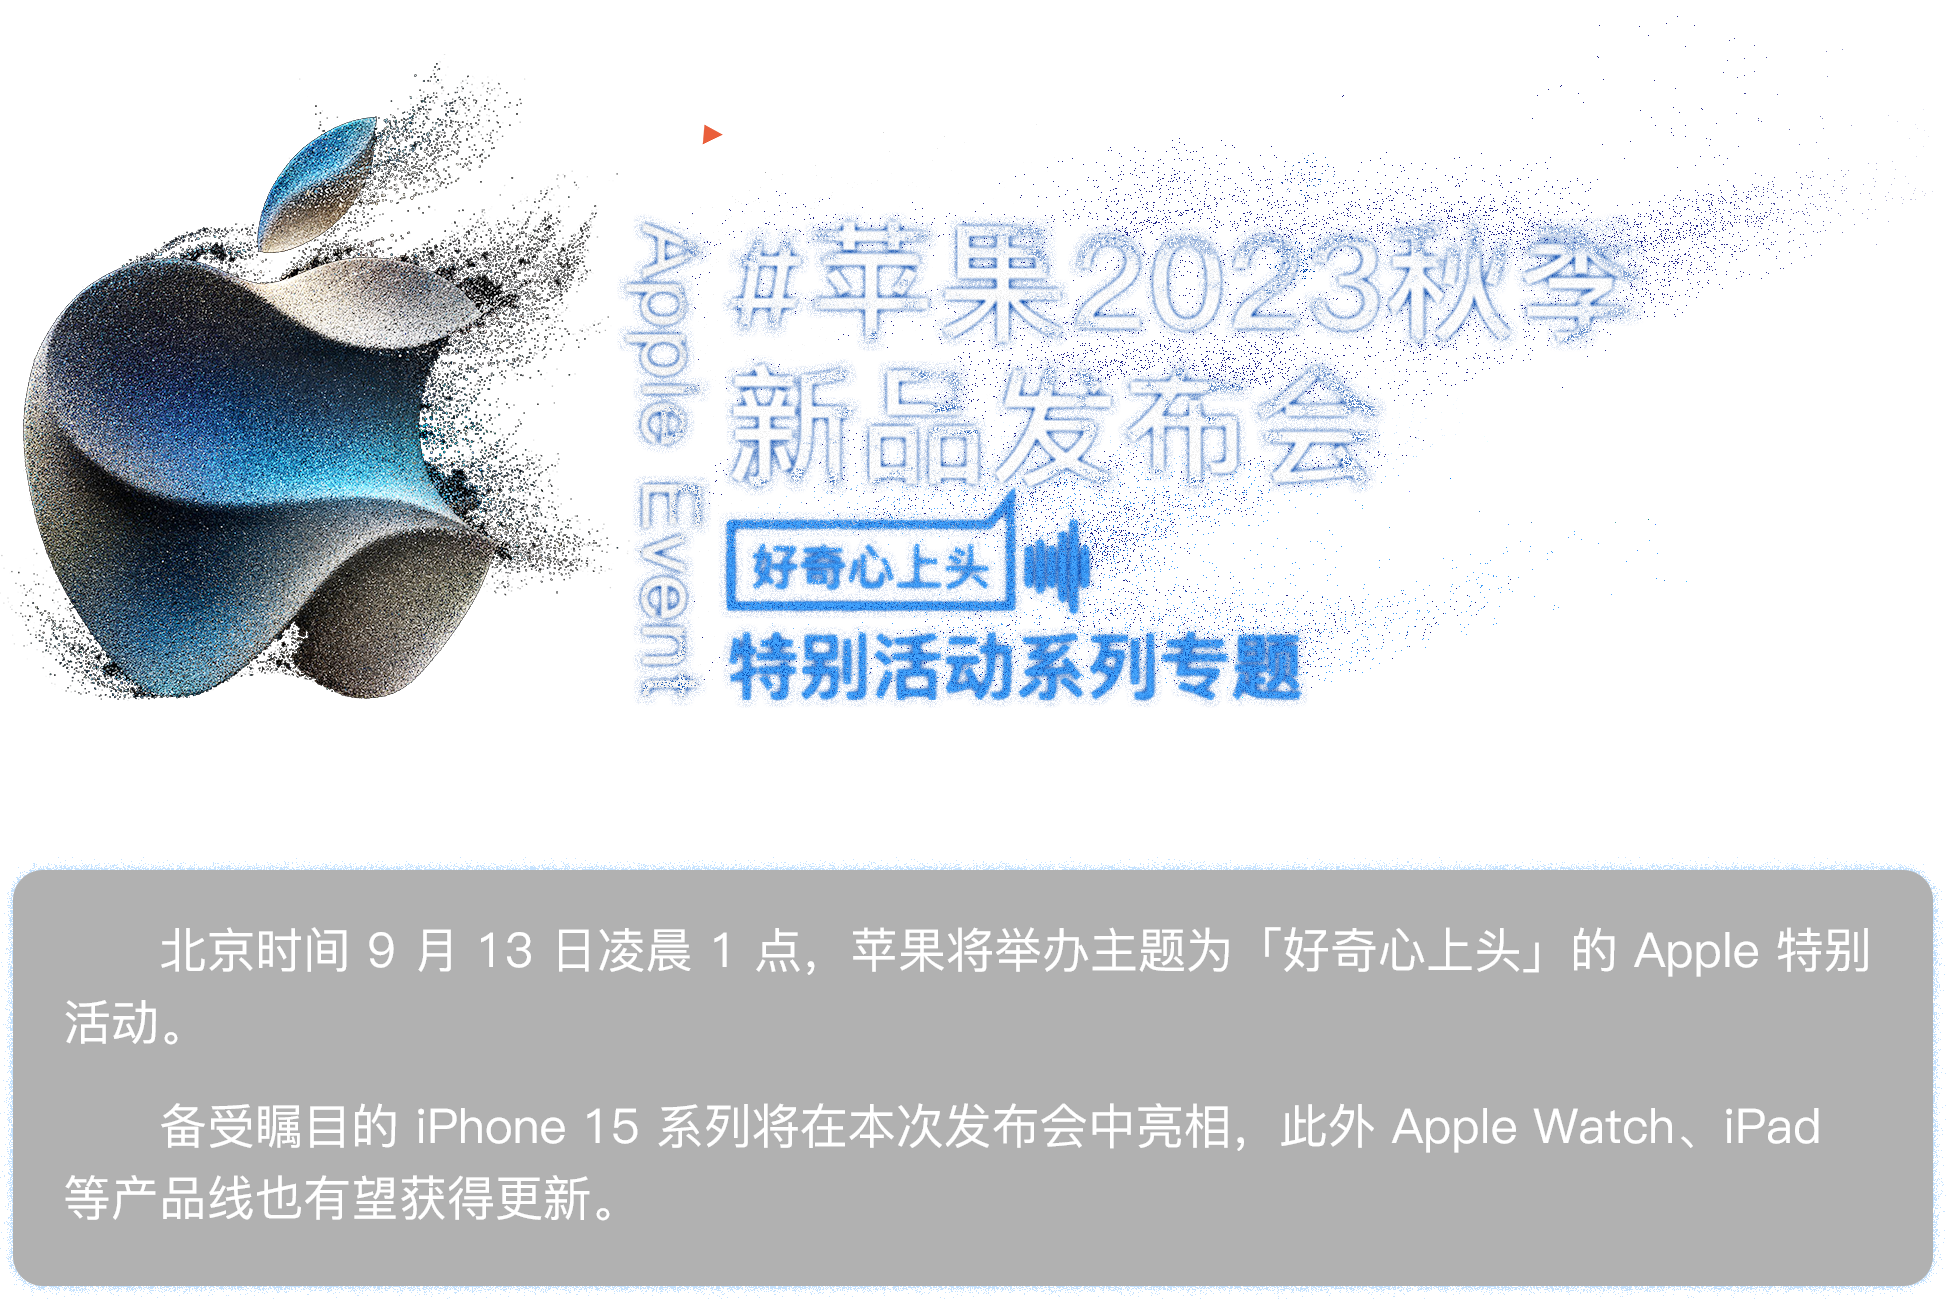 苹果 2023 秋季新品发布会专题：北京时间9月13日凌晨1点，苹果将举办主题为“好奇心上头”的Apple特别活动。备受瞩目的iPhone 15系列将在本次发布会中亮相，此外Apple Watch、iPad等产品线也有望获得更新。